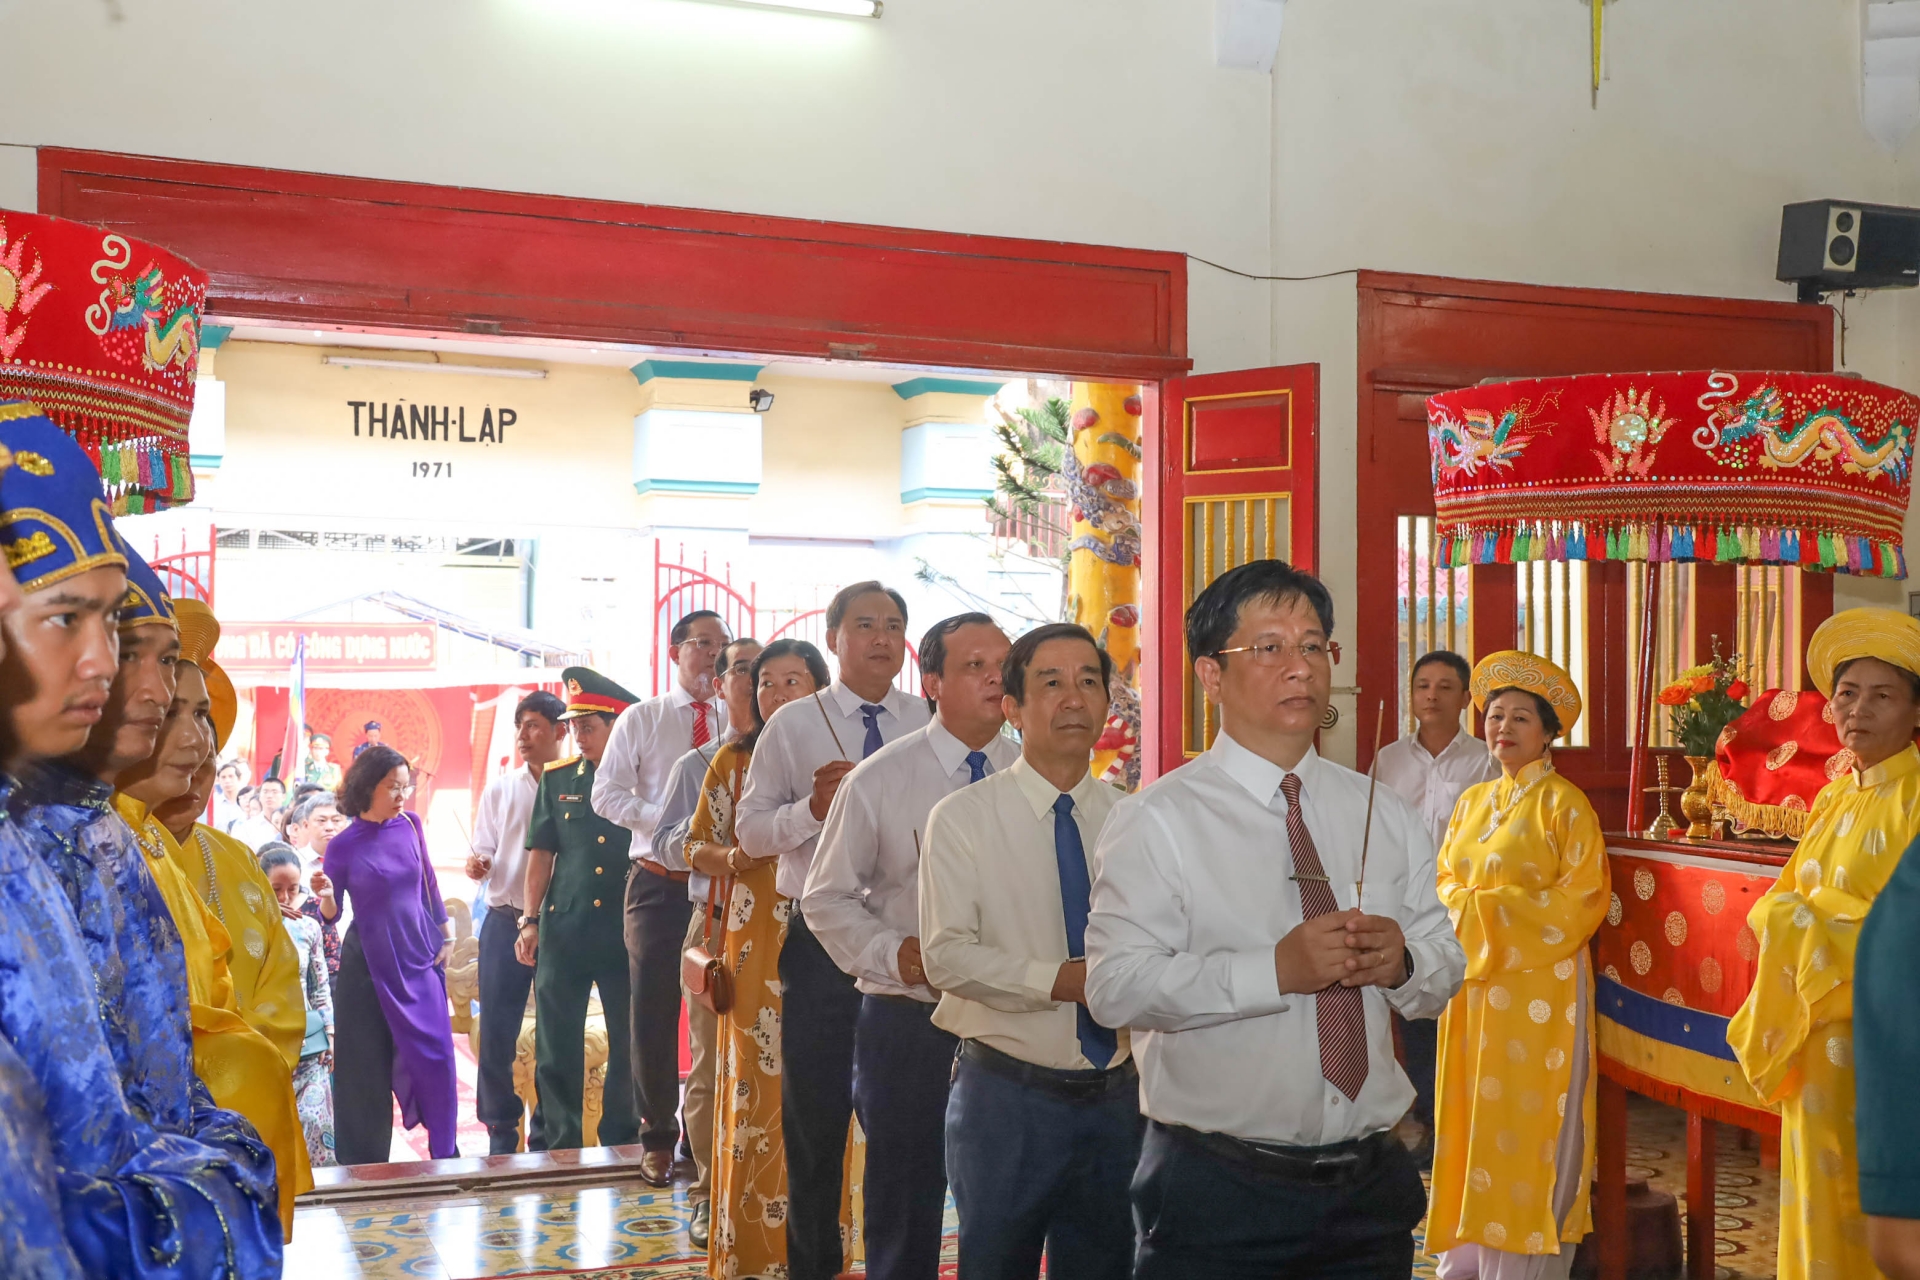 Ho Van Mung and leaderships of Nha Trang City offer incense

